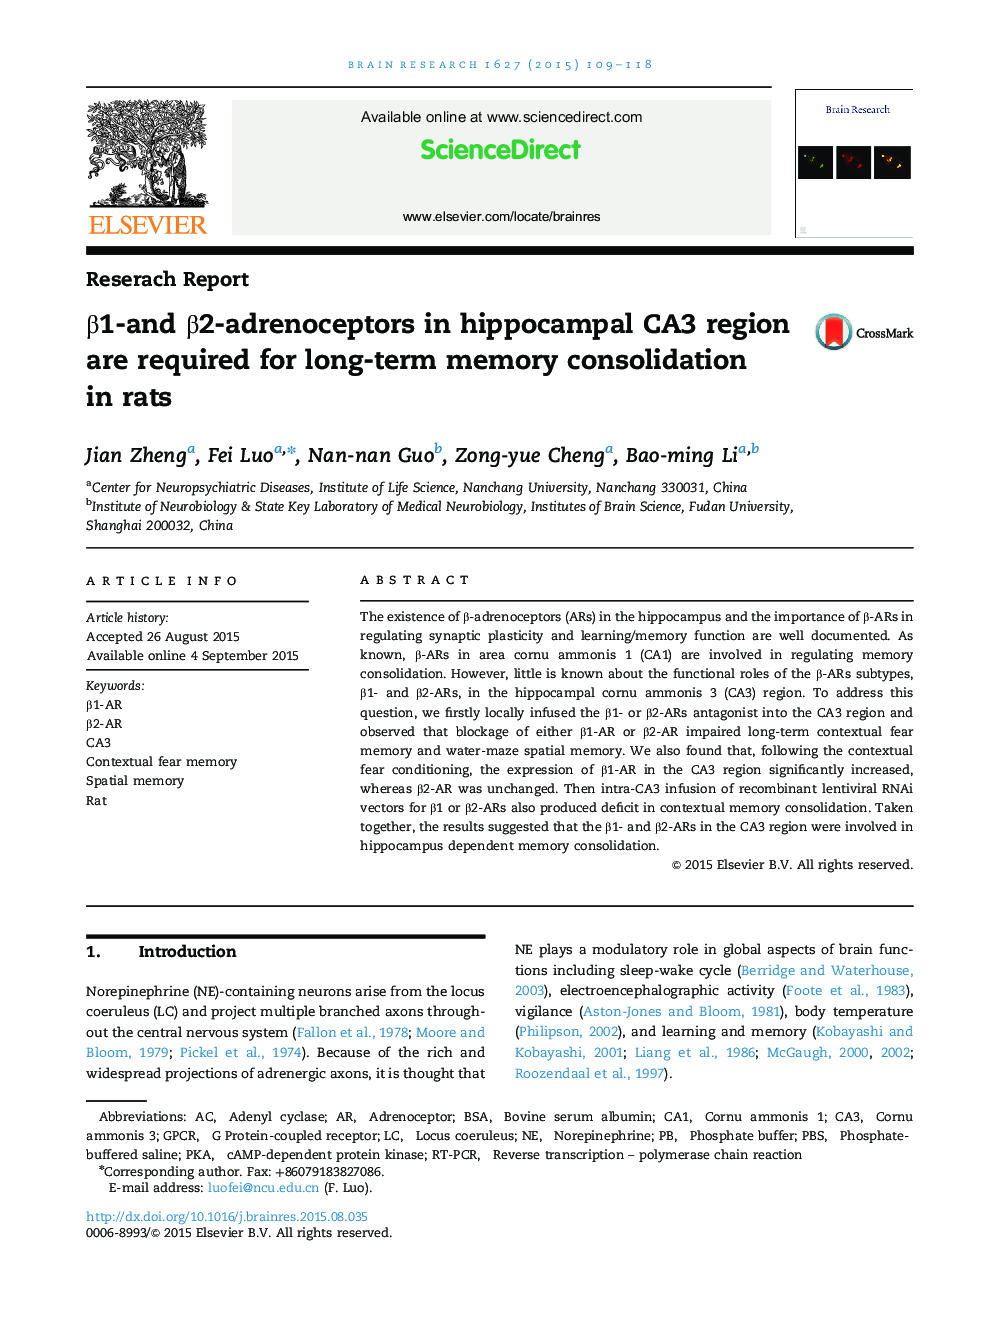 β1-and β2-adrenoceptors in hippocampal CA3 region are required for long-term memory consolidation in rats